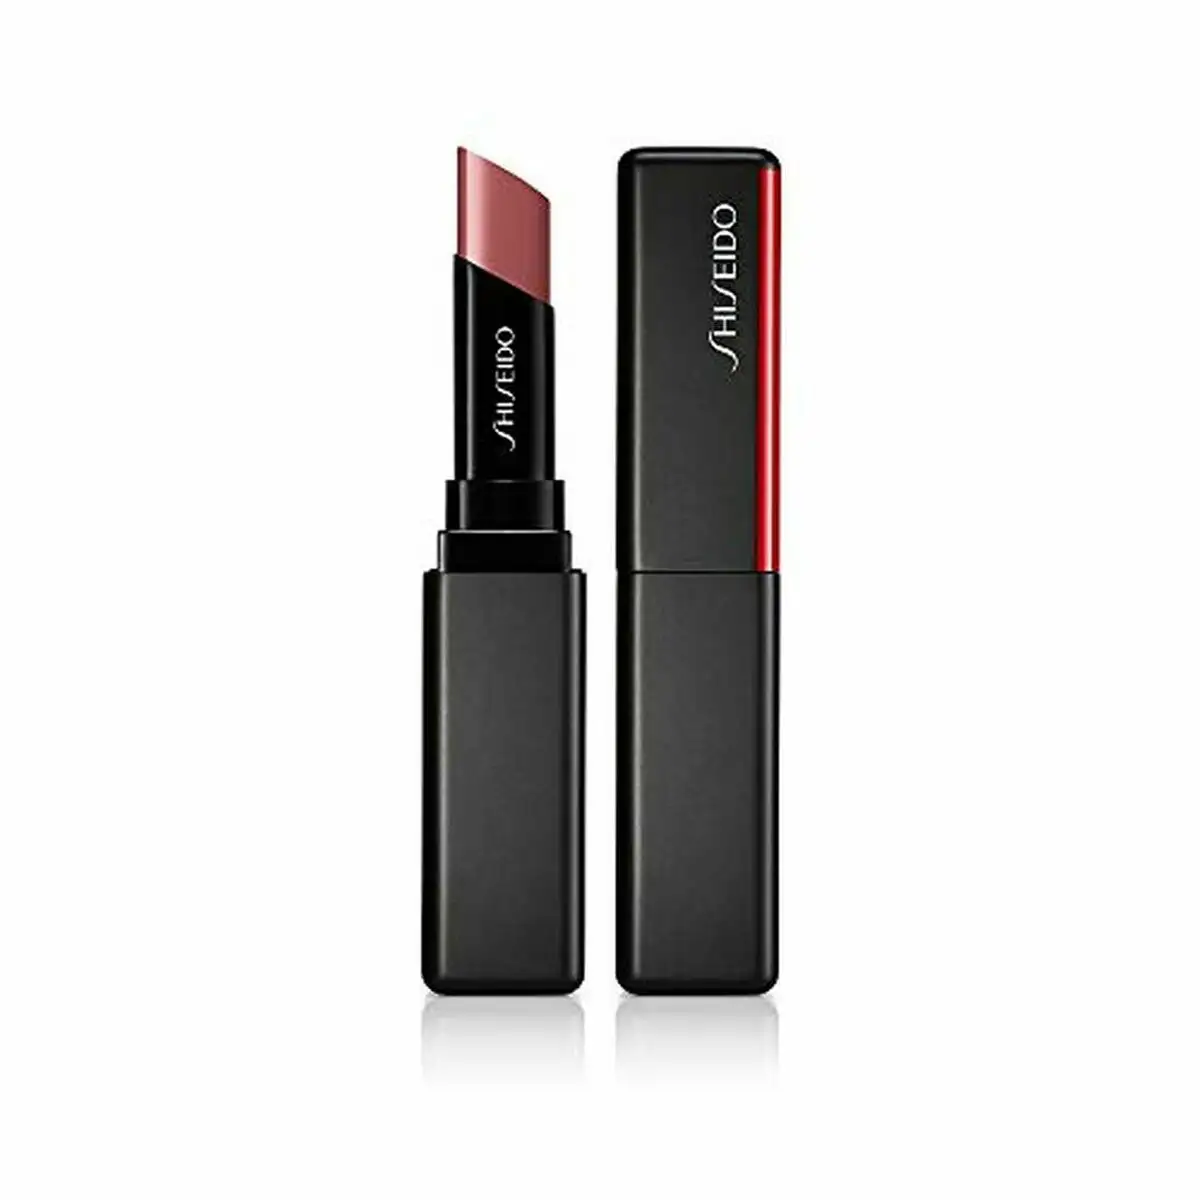 Rouge a le vres shiseido visionairy gel no 203 1 6 g_8038. DIAYTAR SENEGAL - Là où le Shopping Devient une Expérience. Naviguez à travers notre catalogue diversifié et découvrez des produits qui ajoutent de la couleur et de la passion à votre vie.